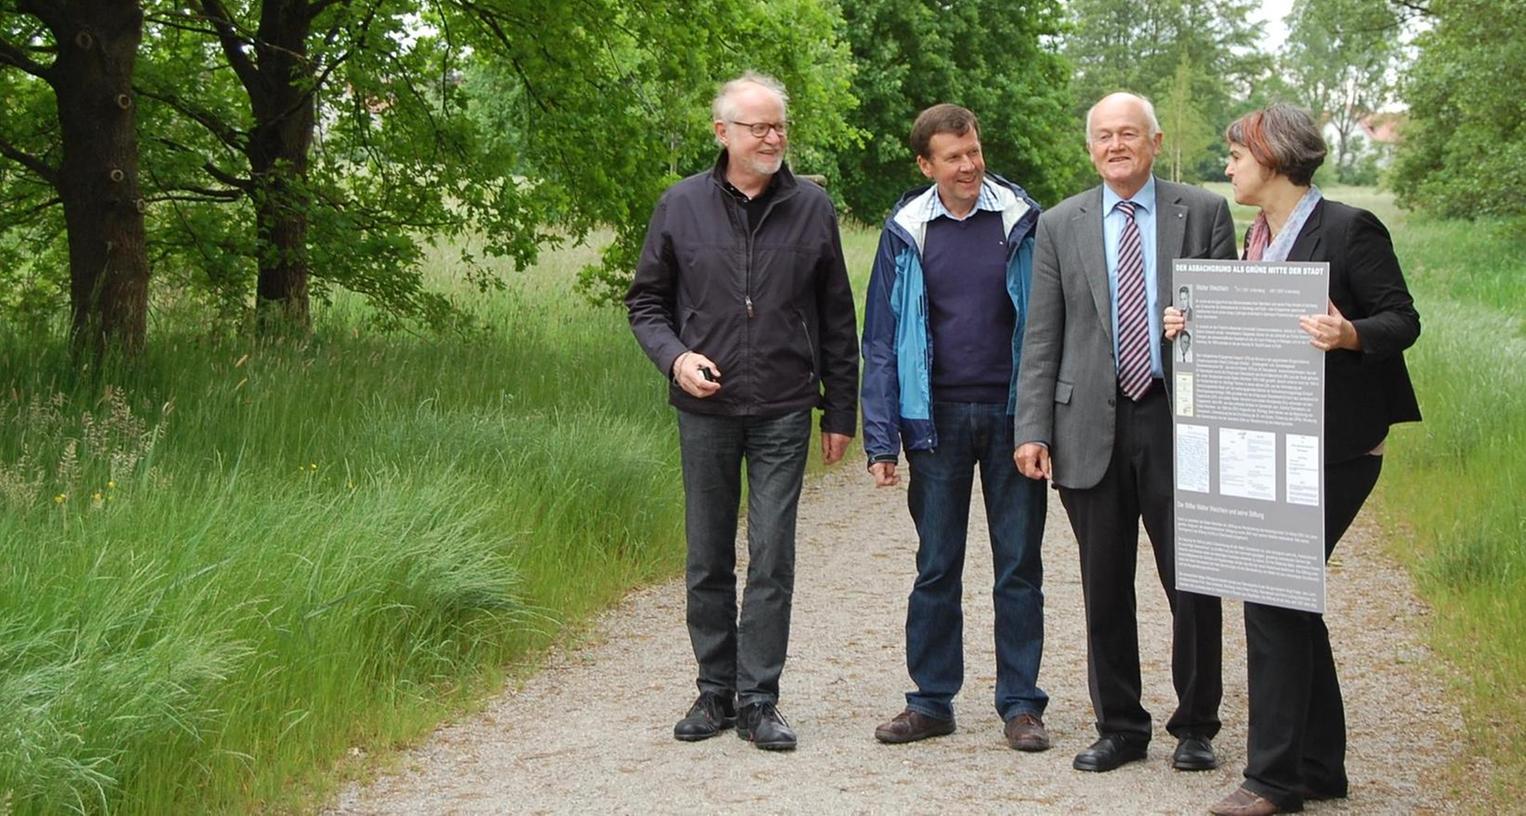 Naturschützer aus Oberasbach geehrt